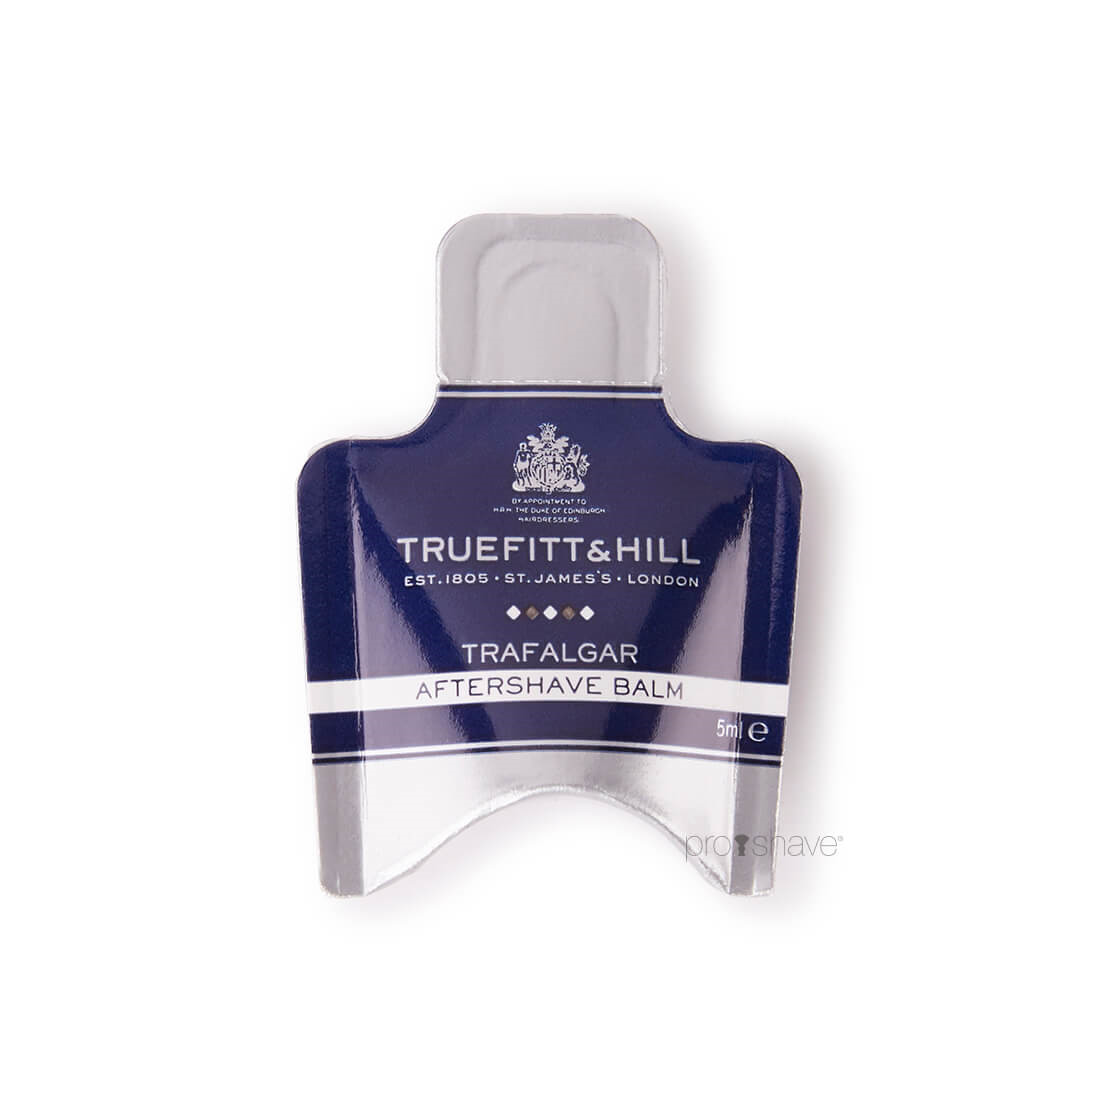 Truefitt & Hill Trafalgar Aftershave Balm Sample Pack, 5 ml.